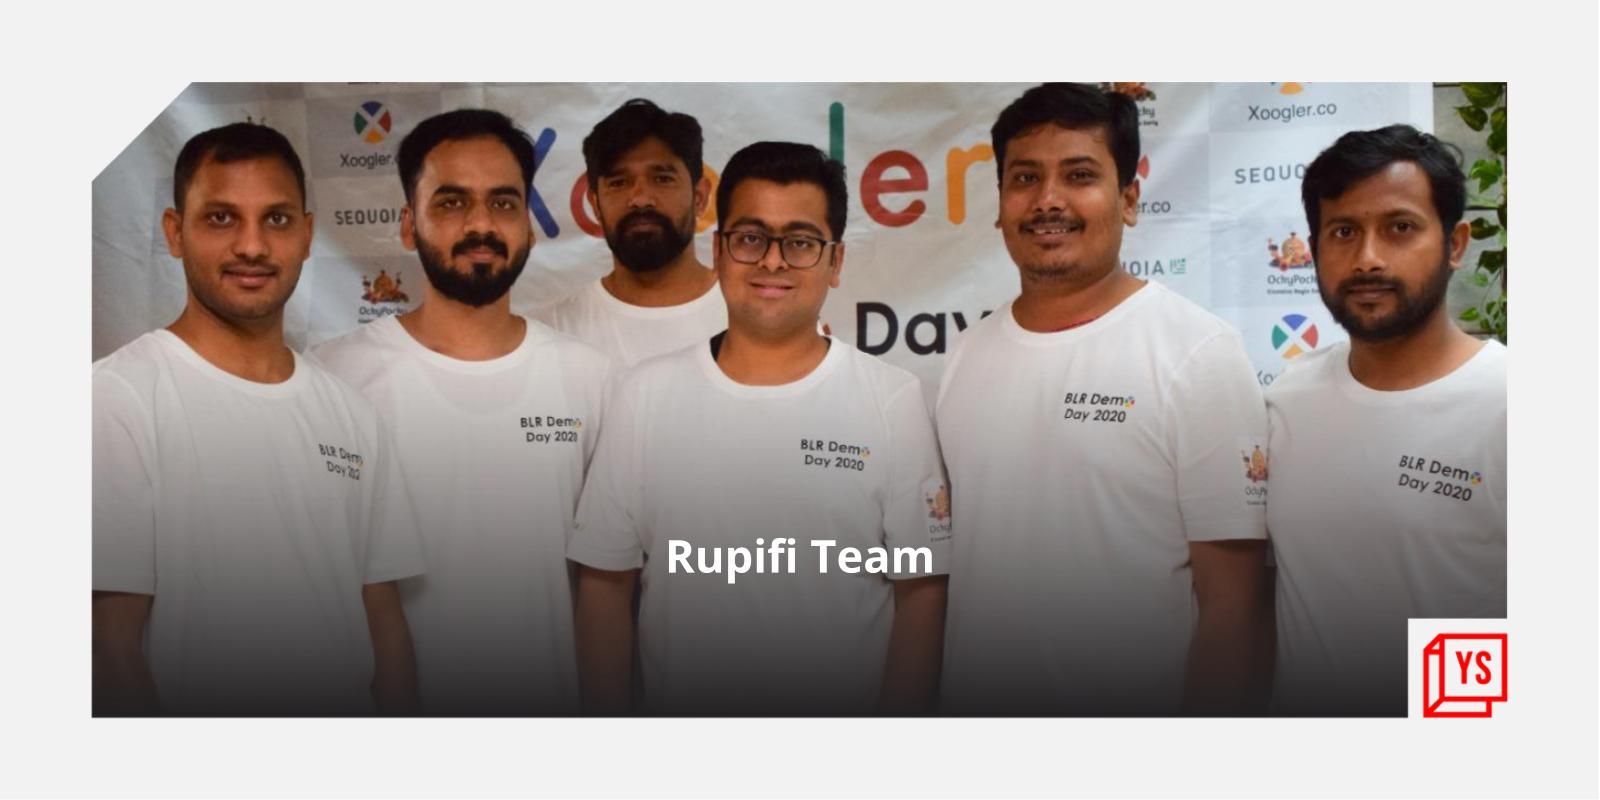 [Funding alert] B2B fintech startup Rupifi raises $25M from Bessemer Venture Partners, Tiger Global